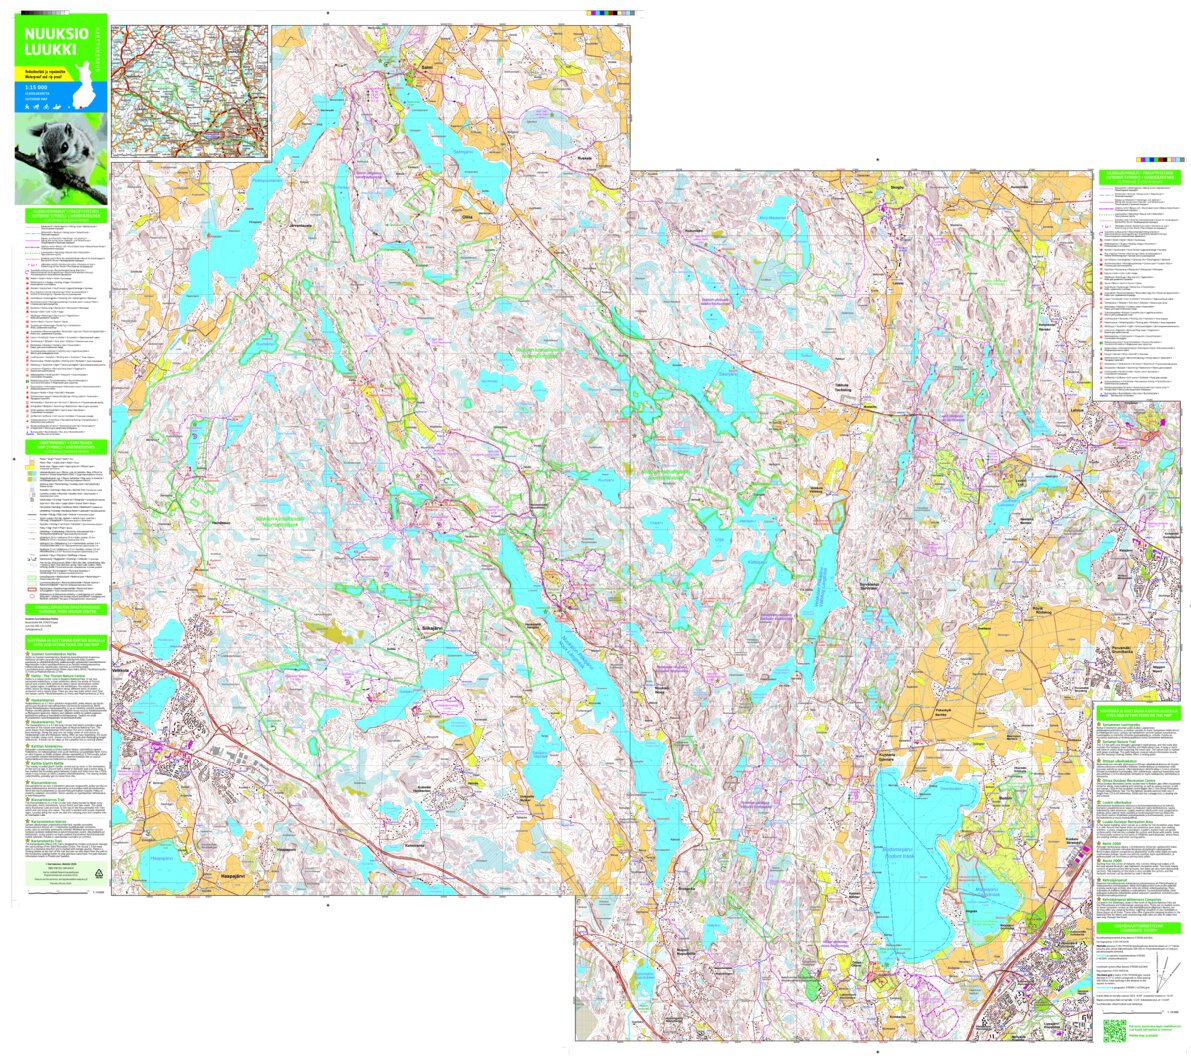 Nuuksio Luukki 1:15 000 map by Tapio Palvelut Oy / Karttakeskus - Avenza  Maps | Avenza Maps